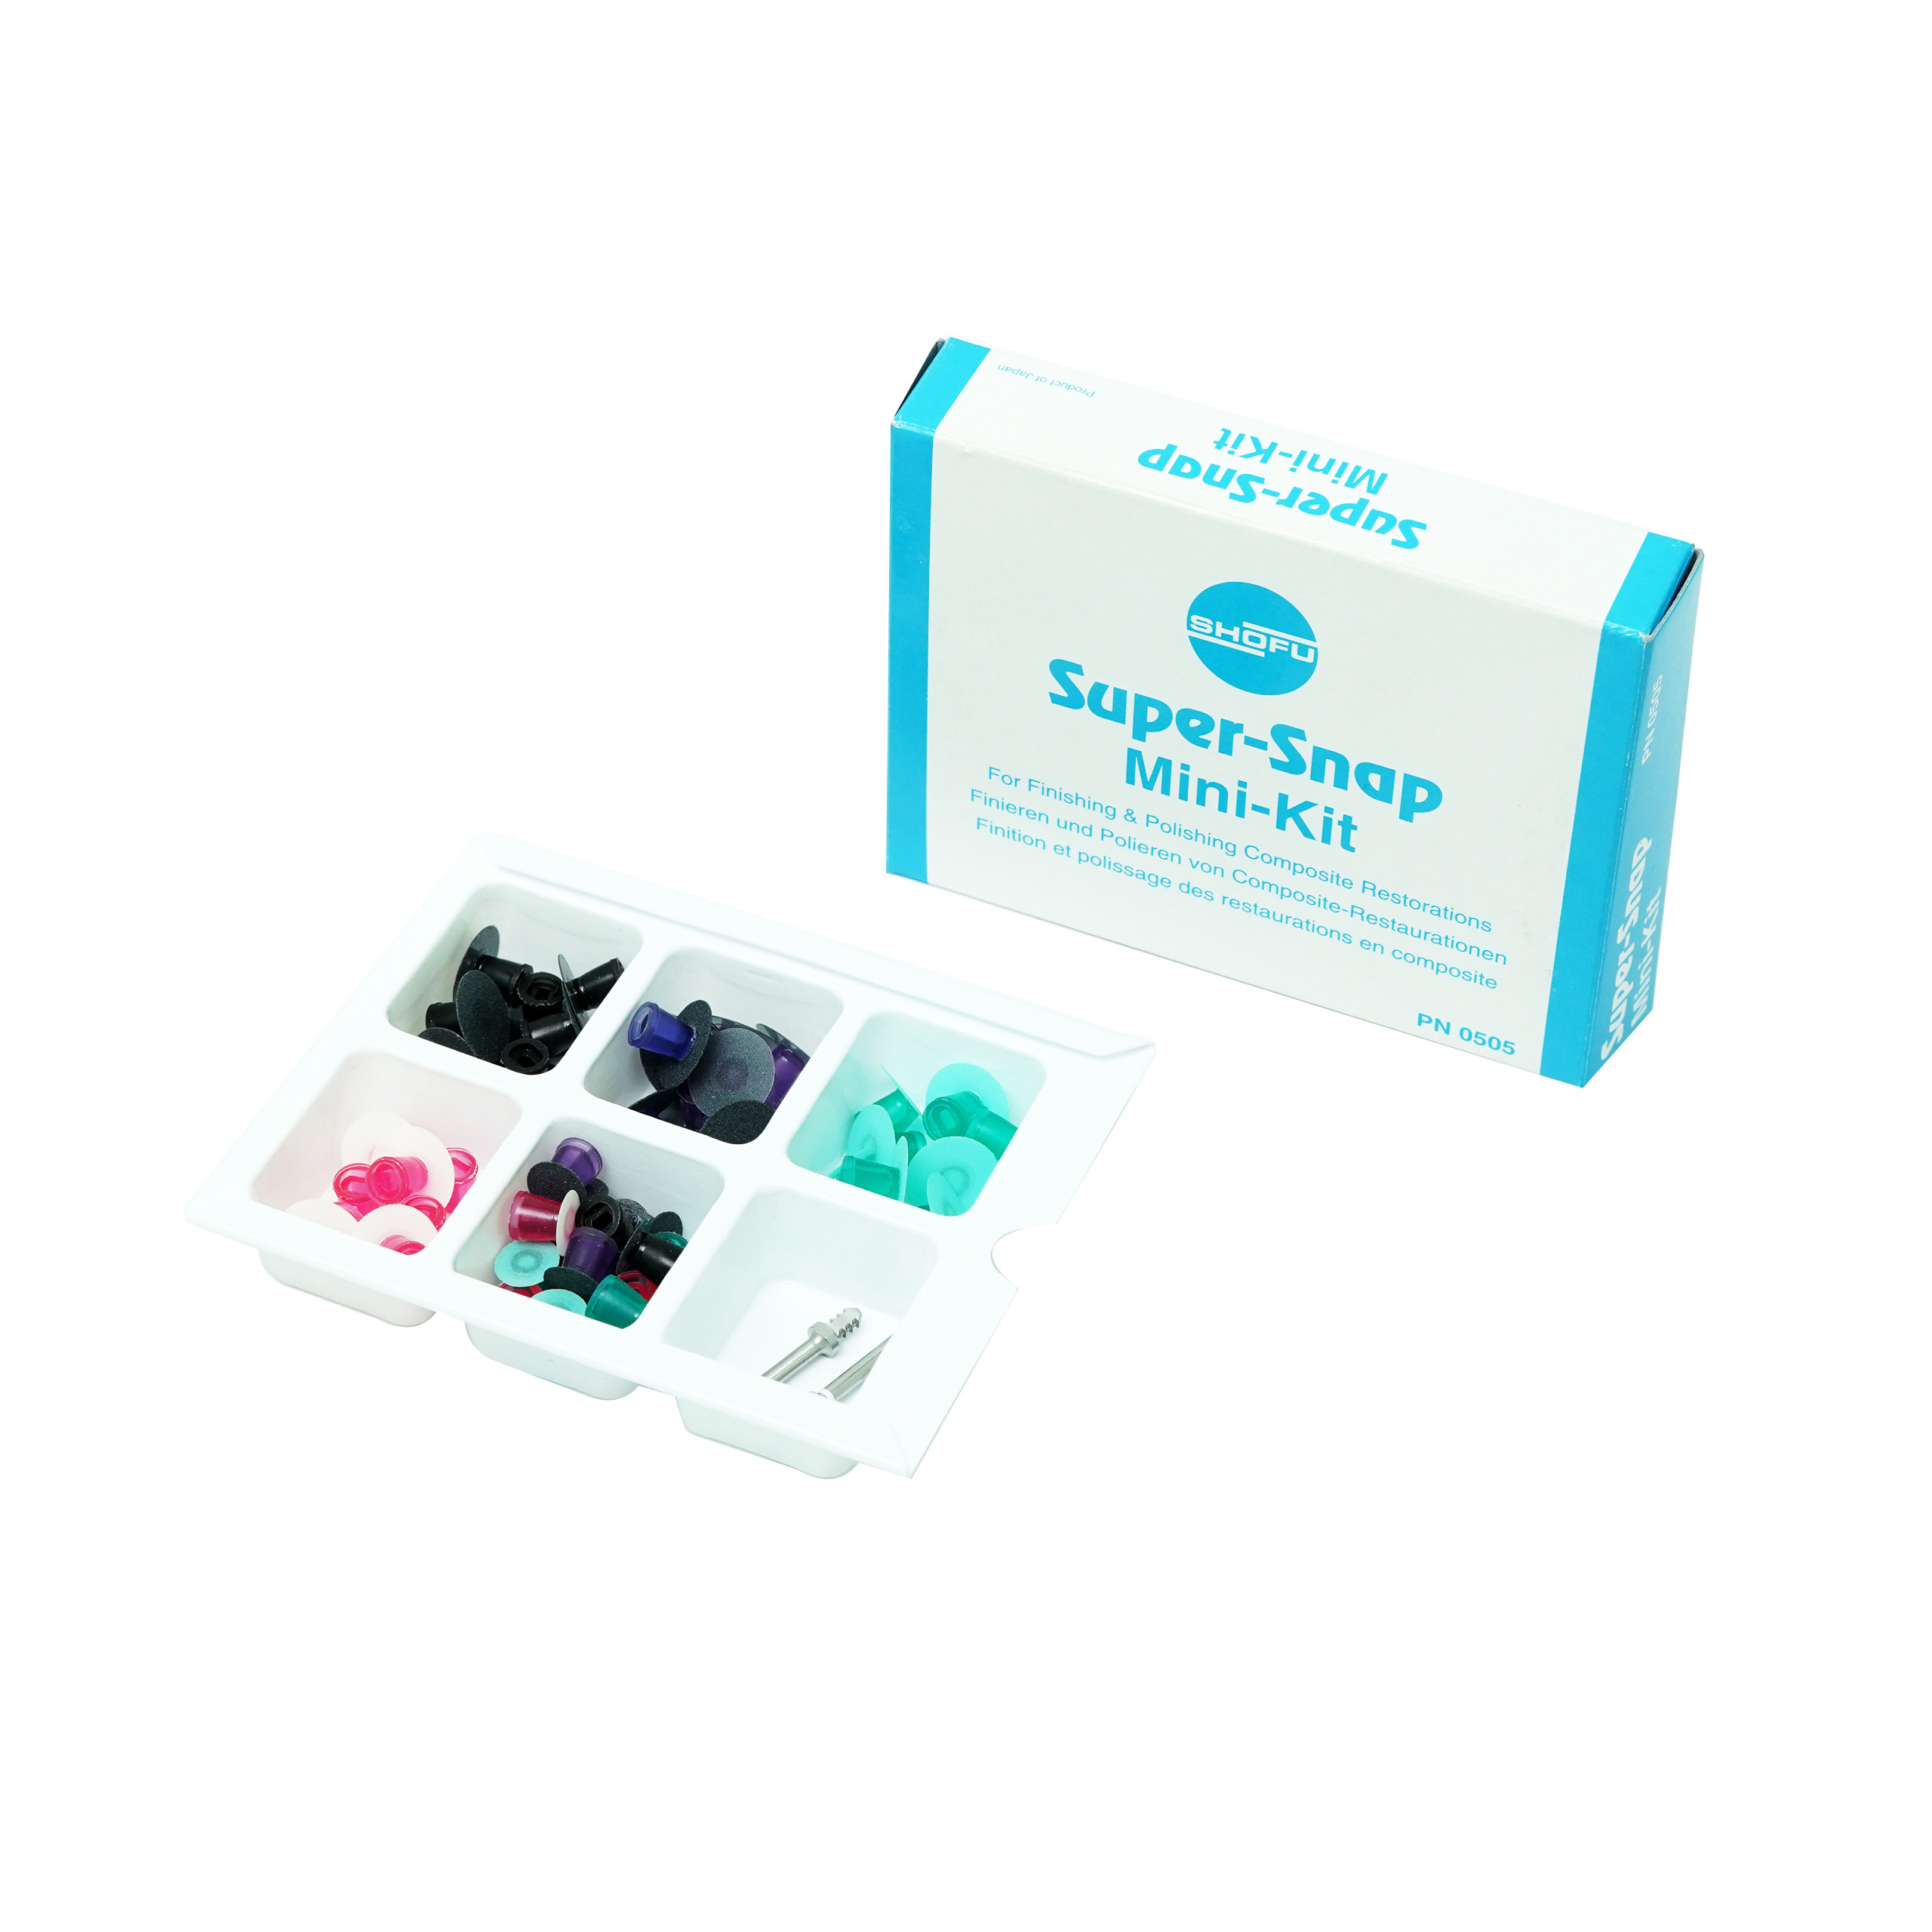 Shofu Super-Snap Mini Dental Finishing Polishing Super Snap Kit